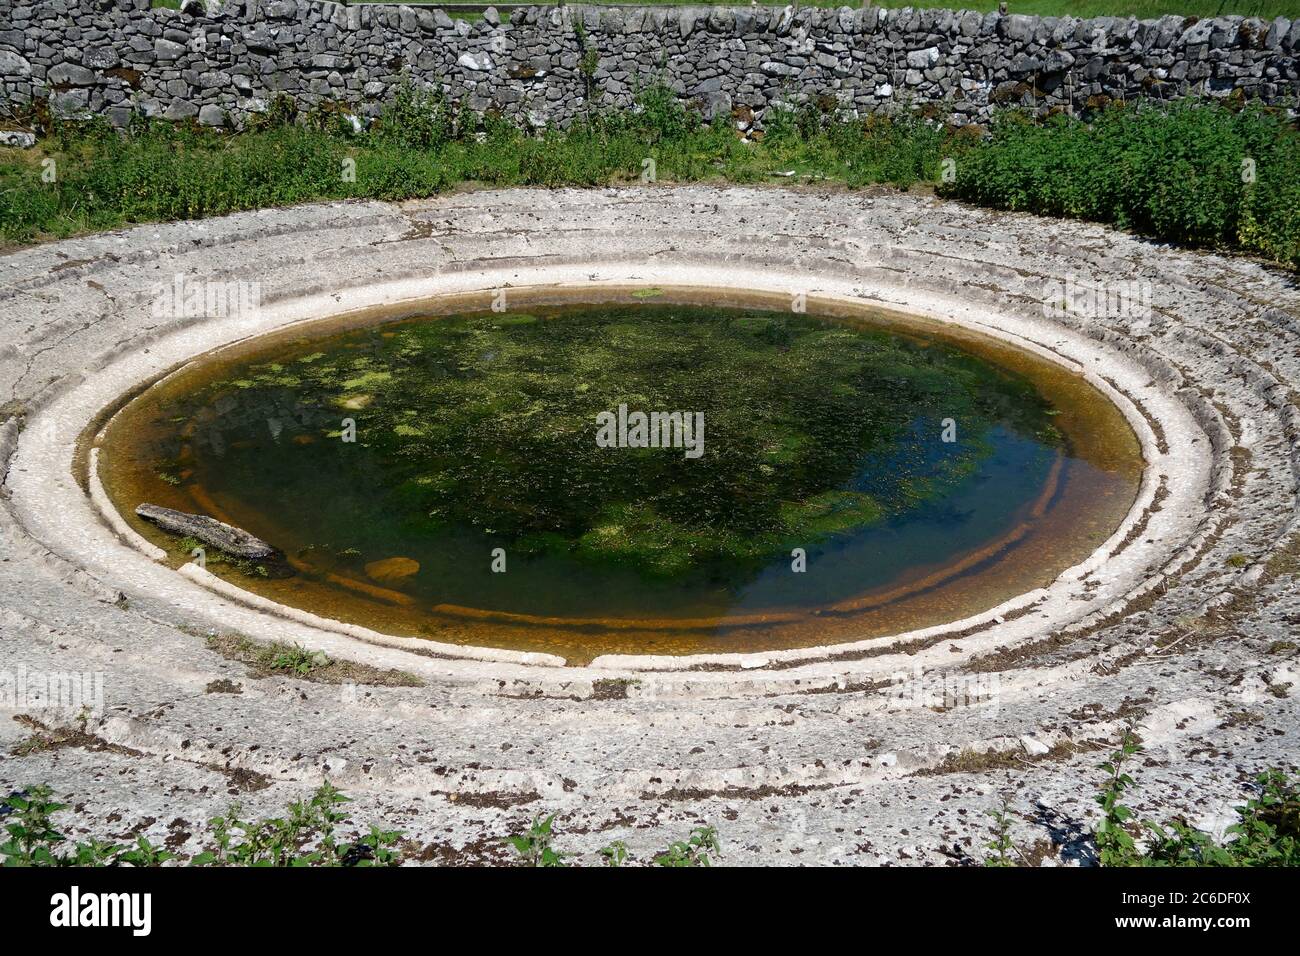 Bassin ou piscine en béton circulaire ou rond, une forme de gestion de l'habitat faunique ou de conservation de la nature en juin, Royaume-Uni Banque D'Images